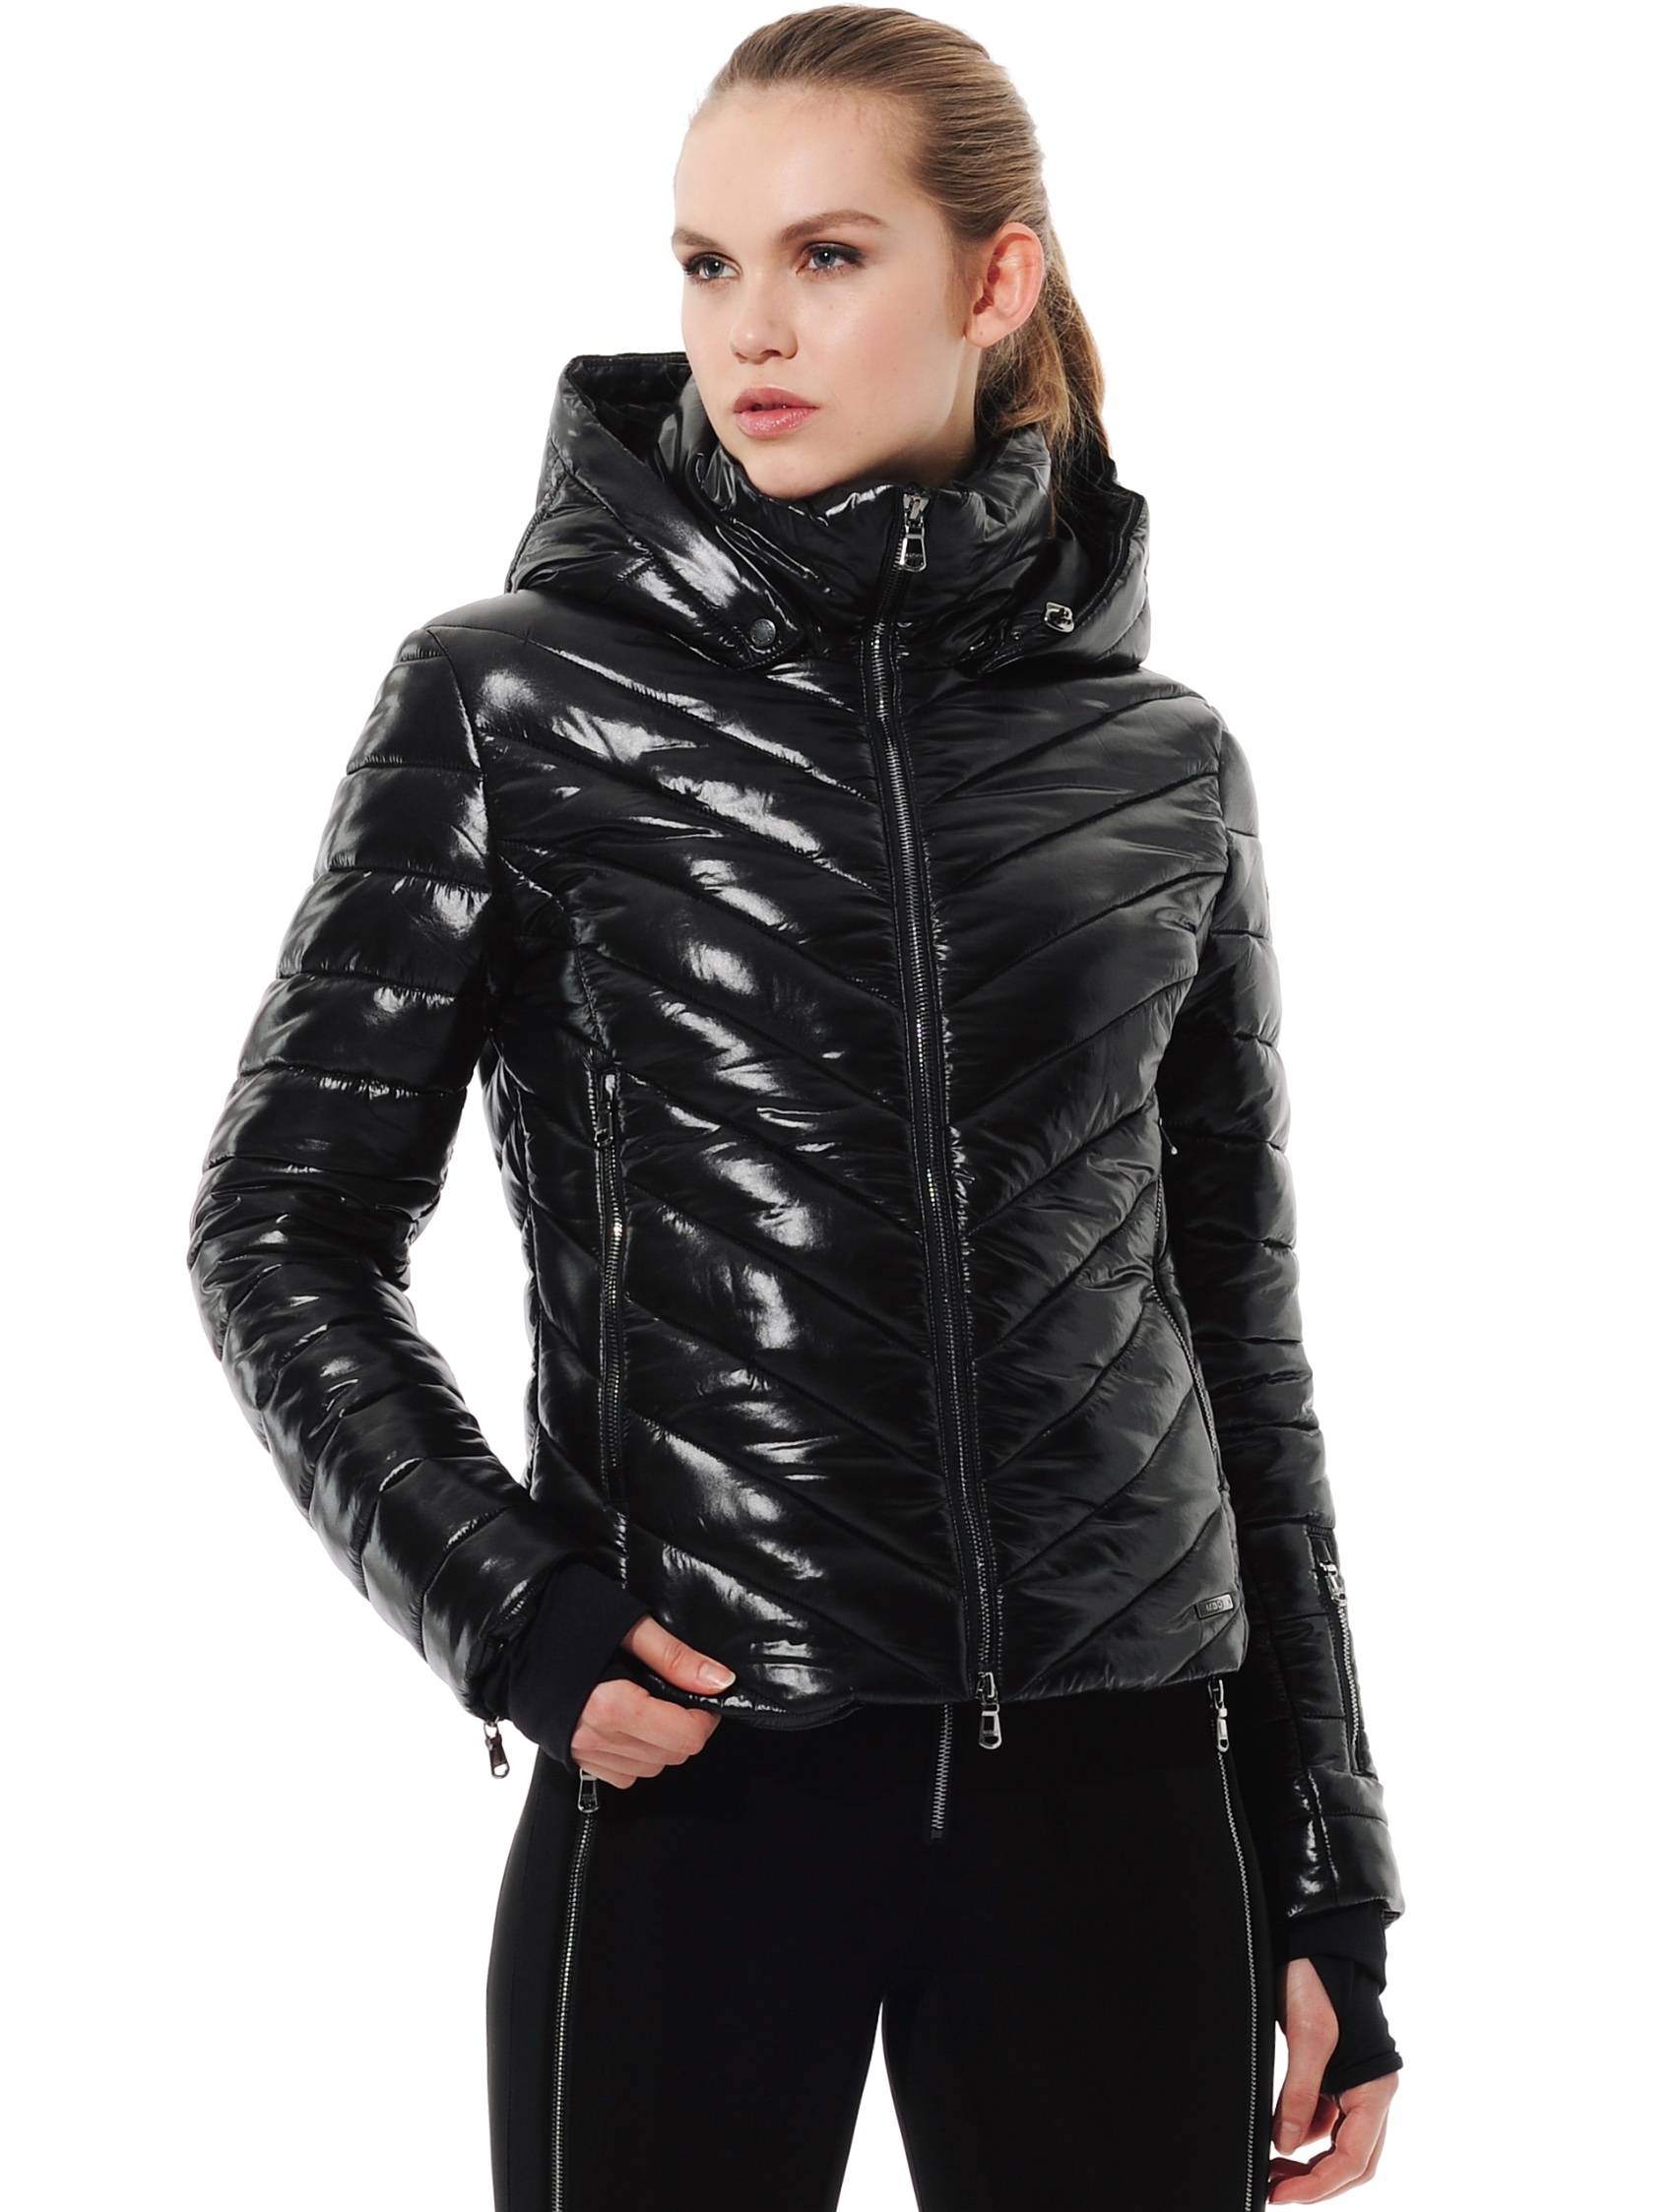 shiny ski jacket black 